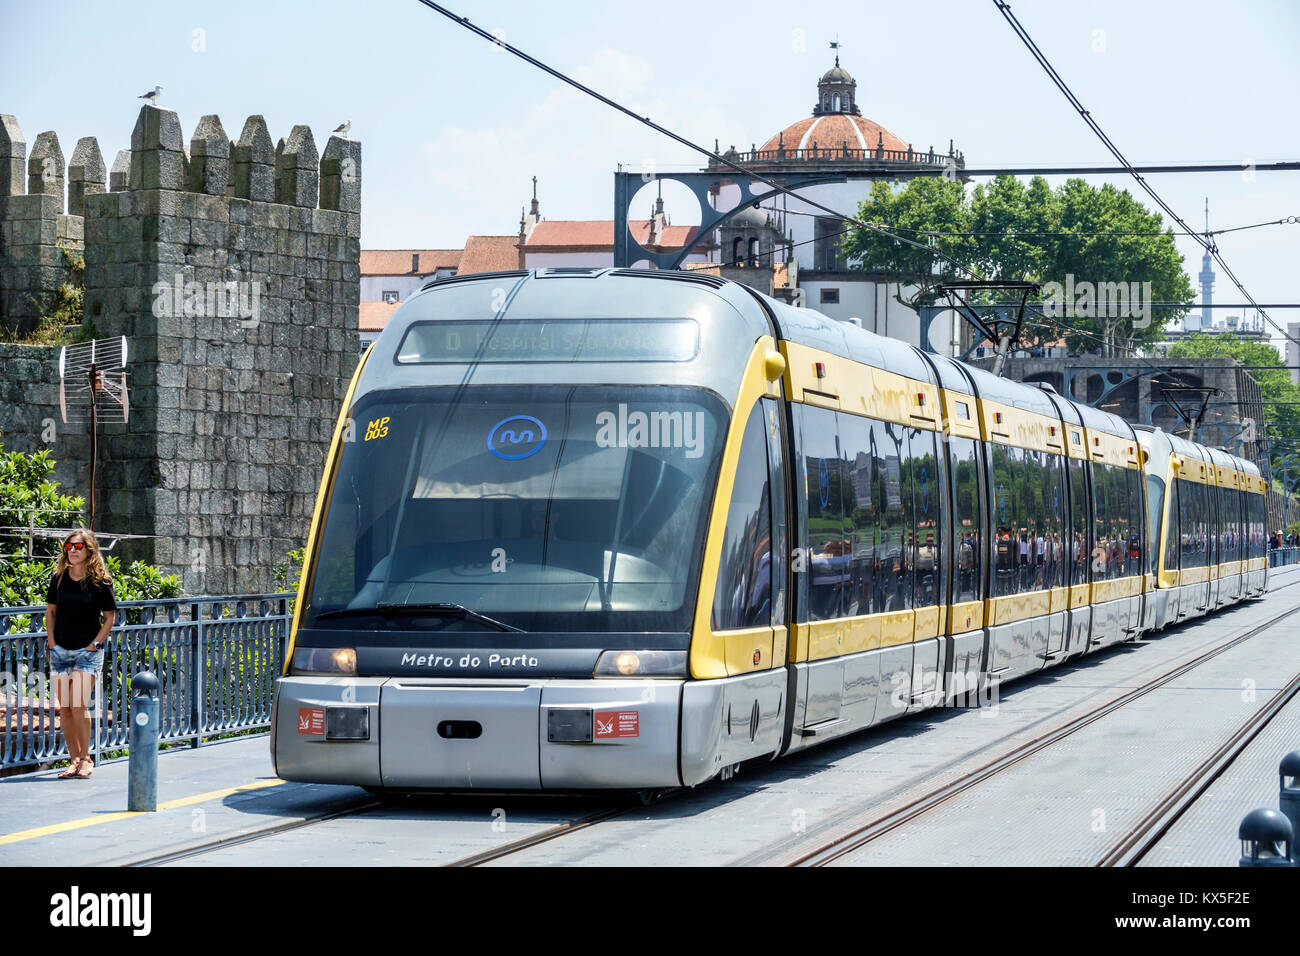 Porto Portugal,Douro River,historic center,Luis I Bridge,Metro do Porto,subway,train,Hispanic,immigrant immigrants,woman female women,pedestrian,above Stock Photo